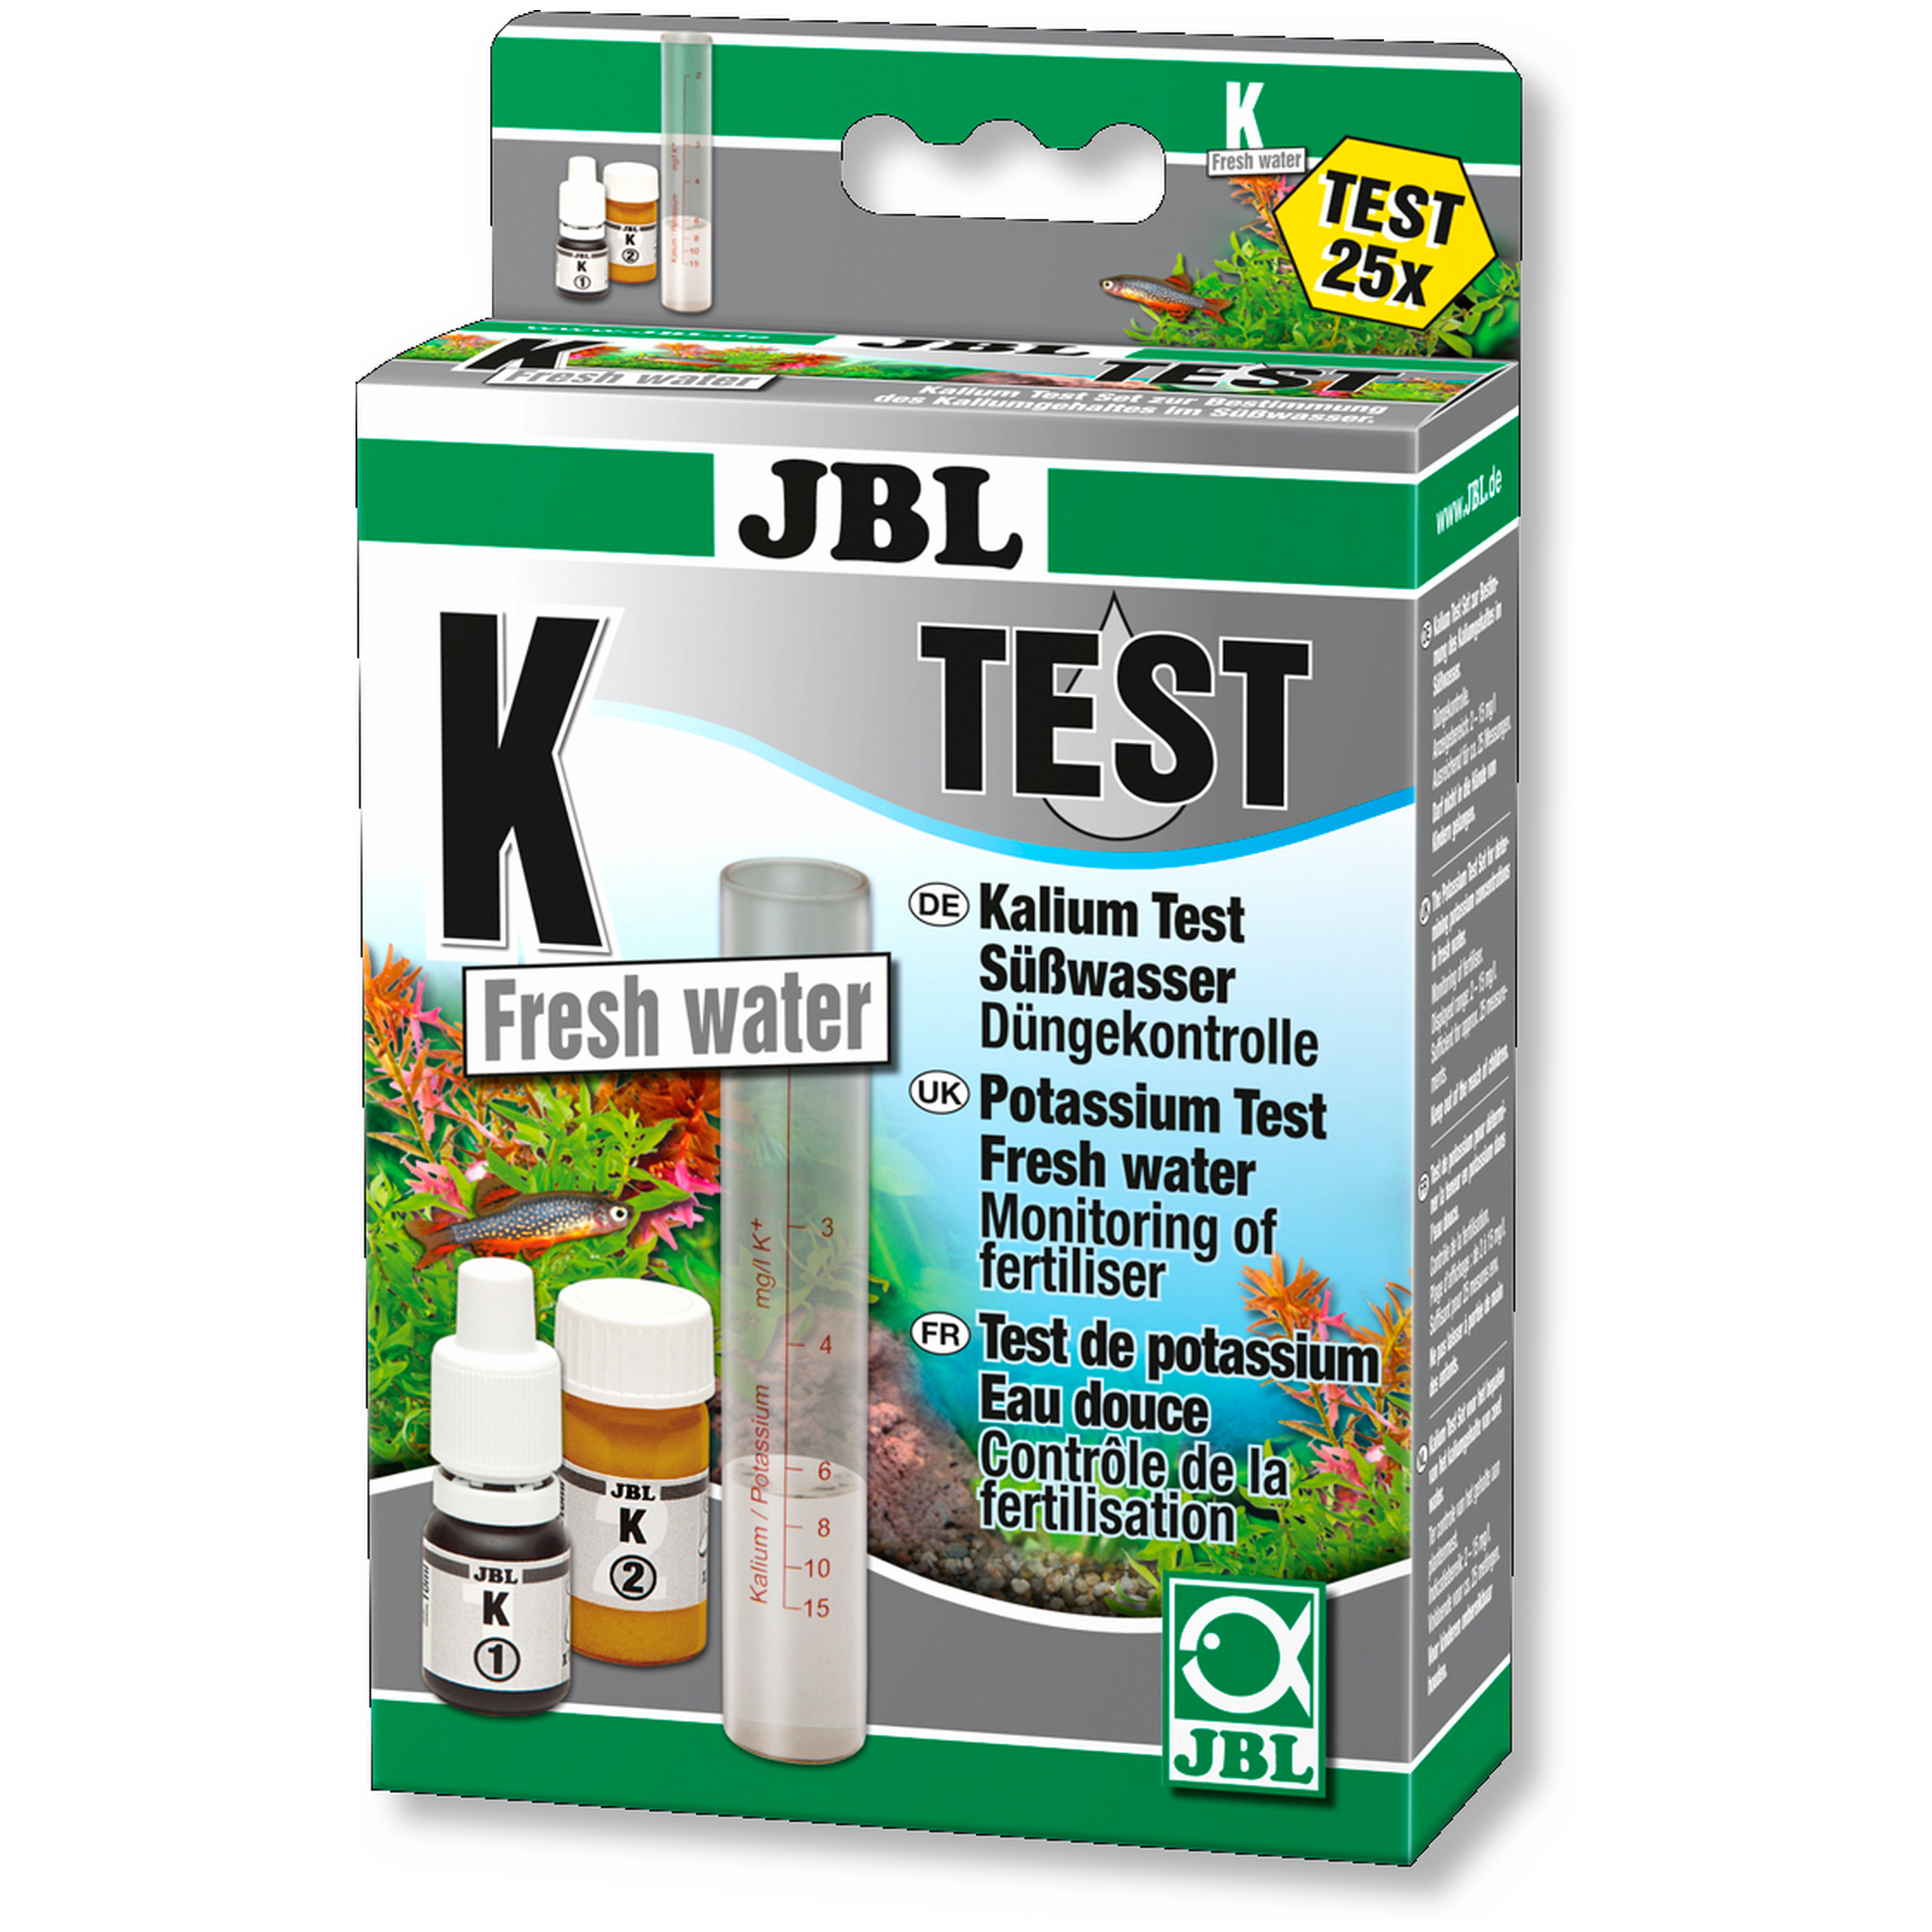 Тест воды для аквариума купить. JBL тесты для аквариума. Тест JBL K potassium Test-Set для определения содержания калия. Тест воды JBL. Тест аквариумной воды на калий.